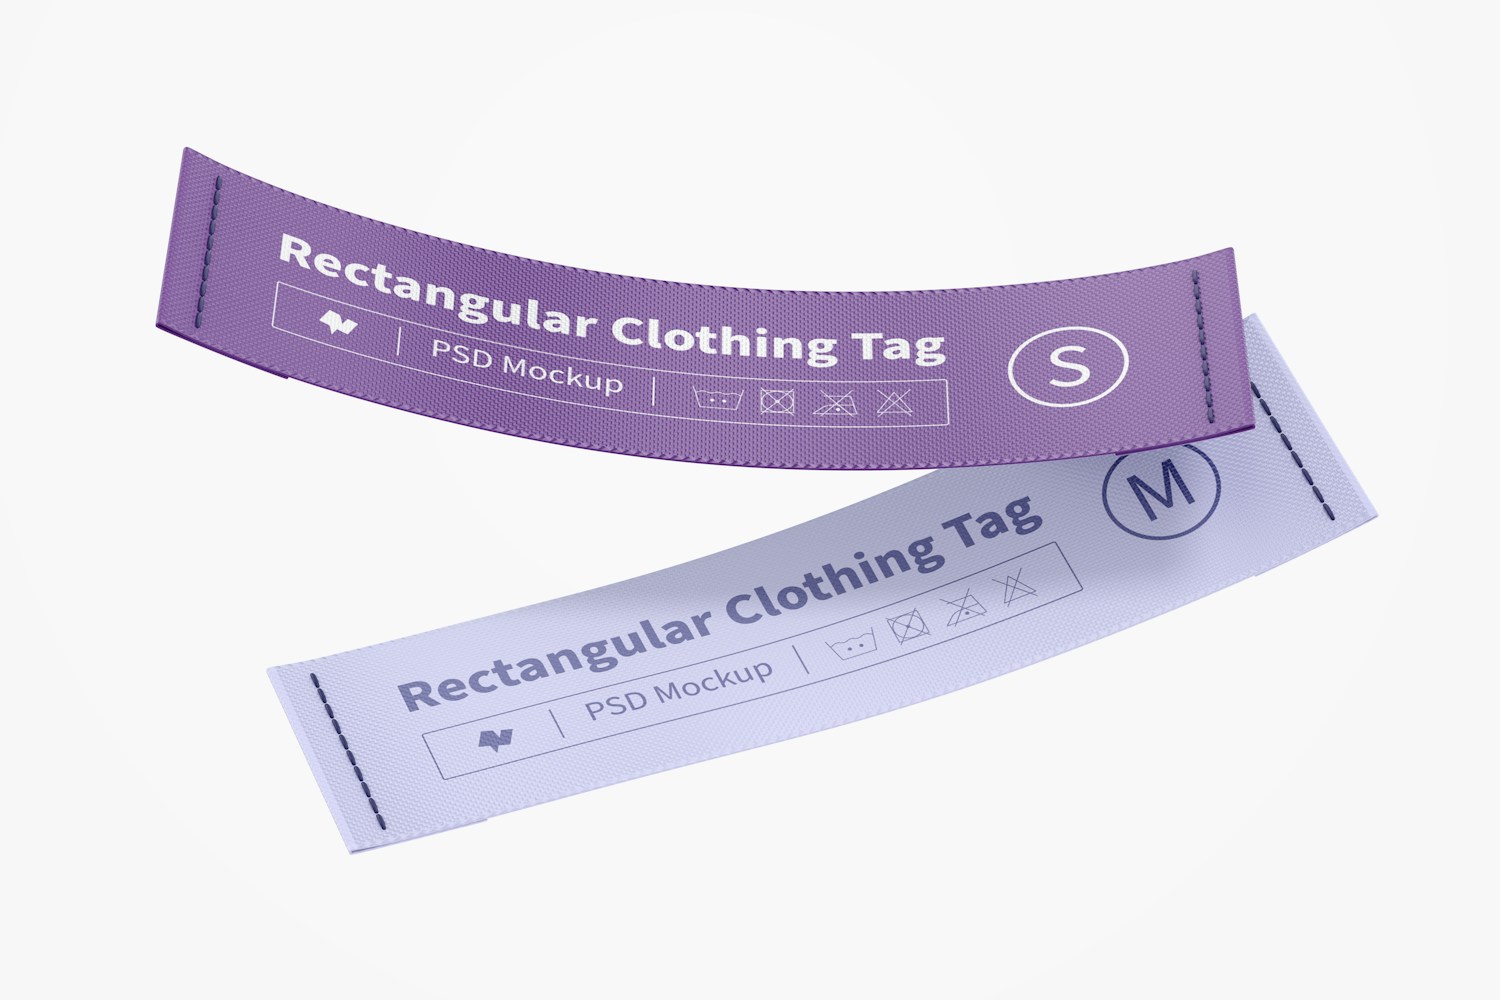 Rectangular Clothing Tags Mockup, Floating